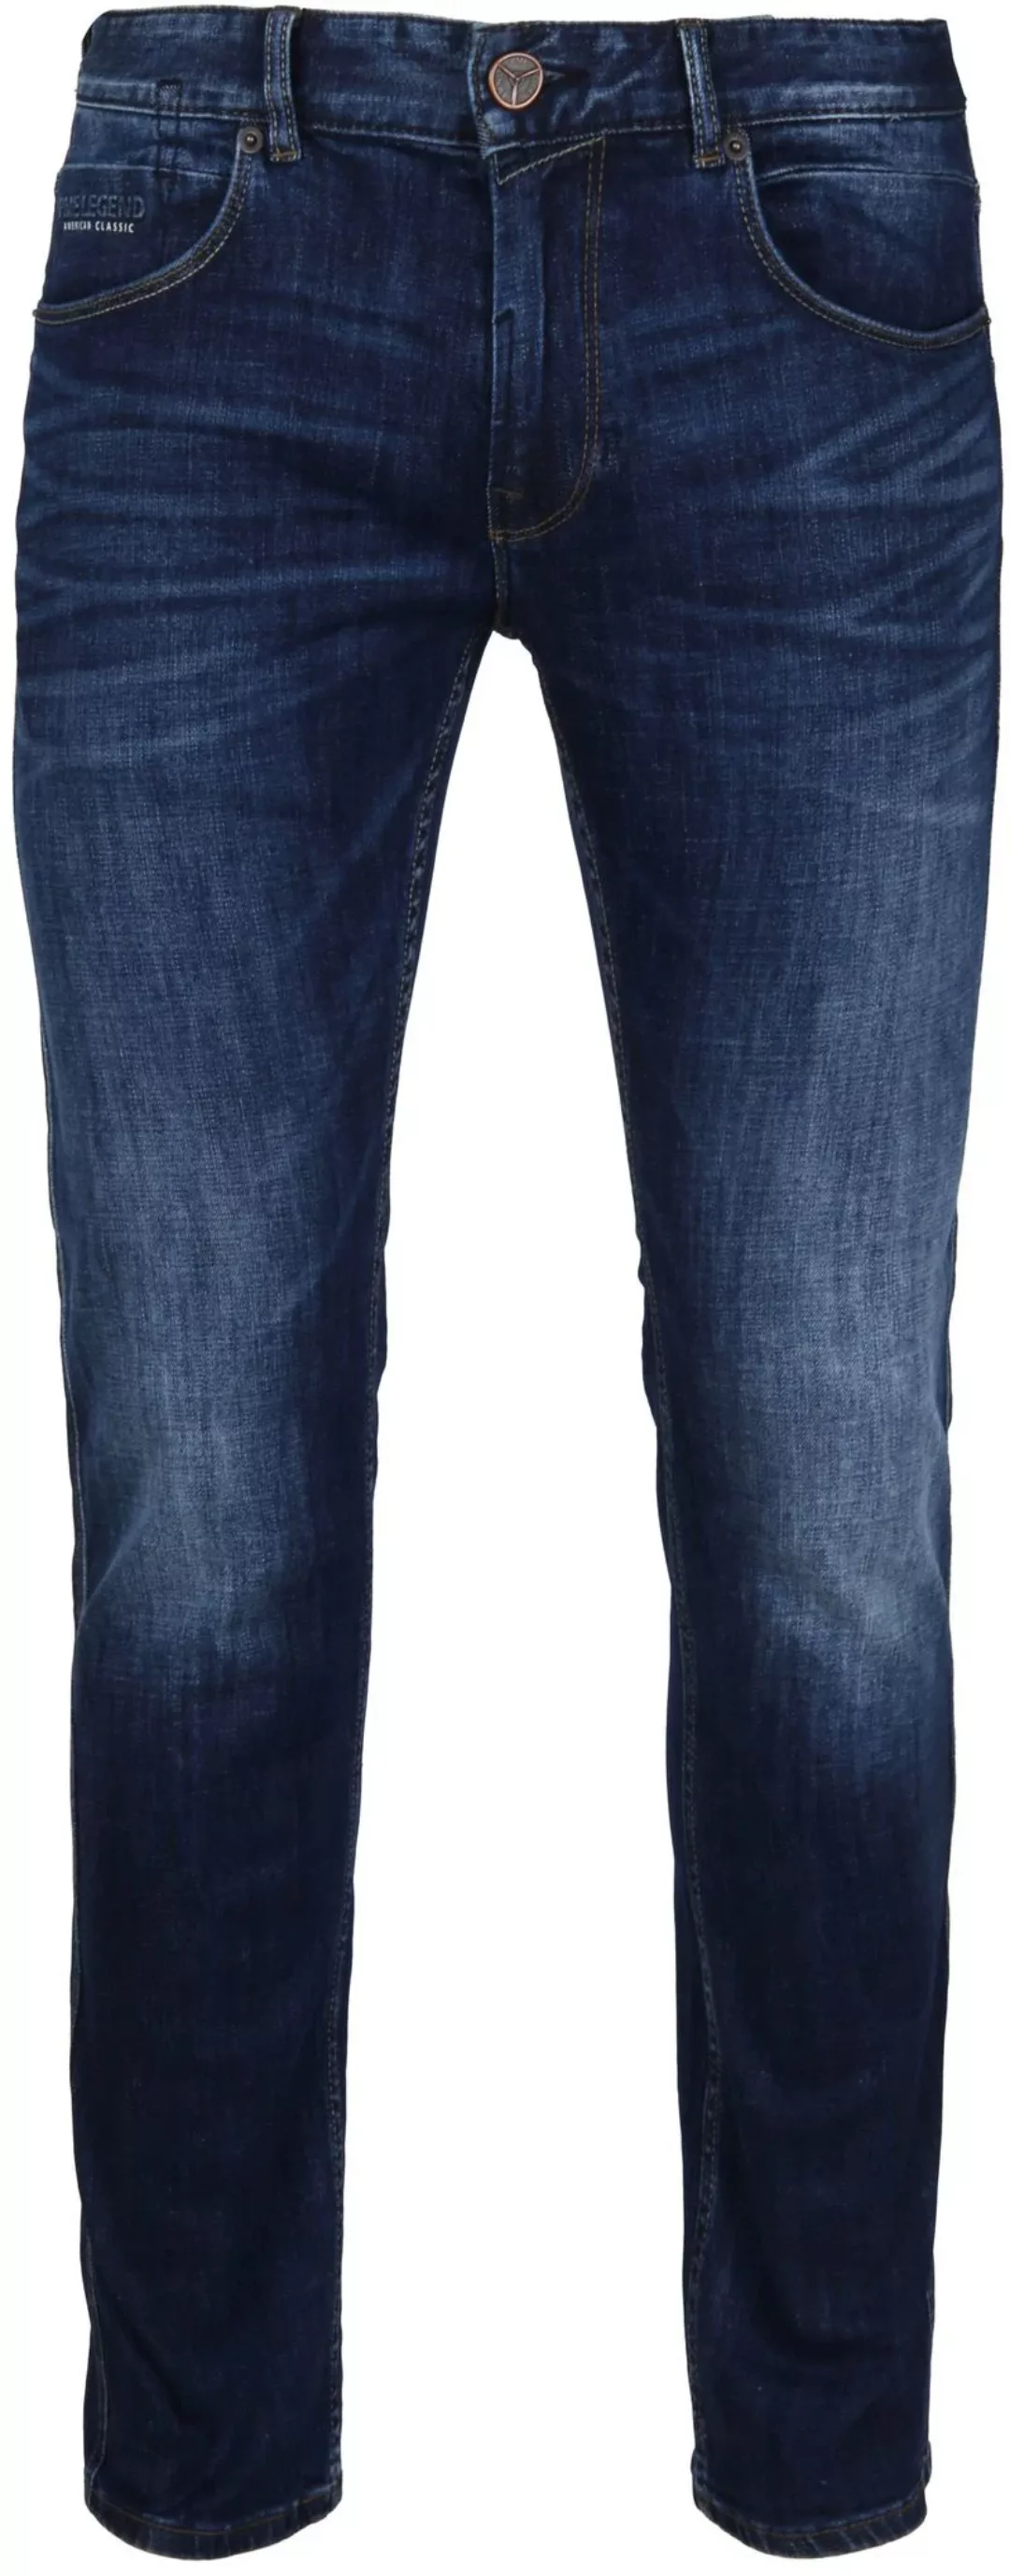 PME Legend Nightflight Jeans Dunkelblau - Größe W 34 - L 36 günstig online kaufen